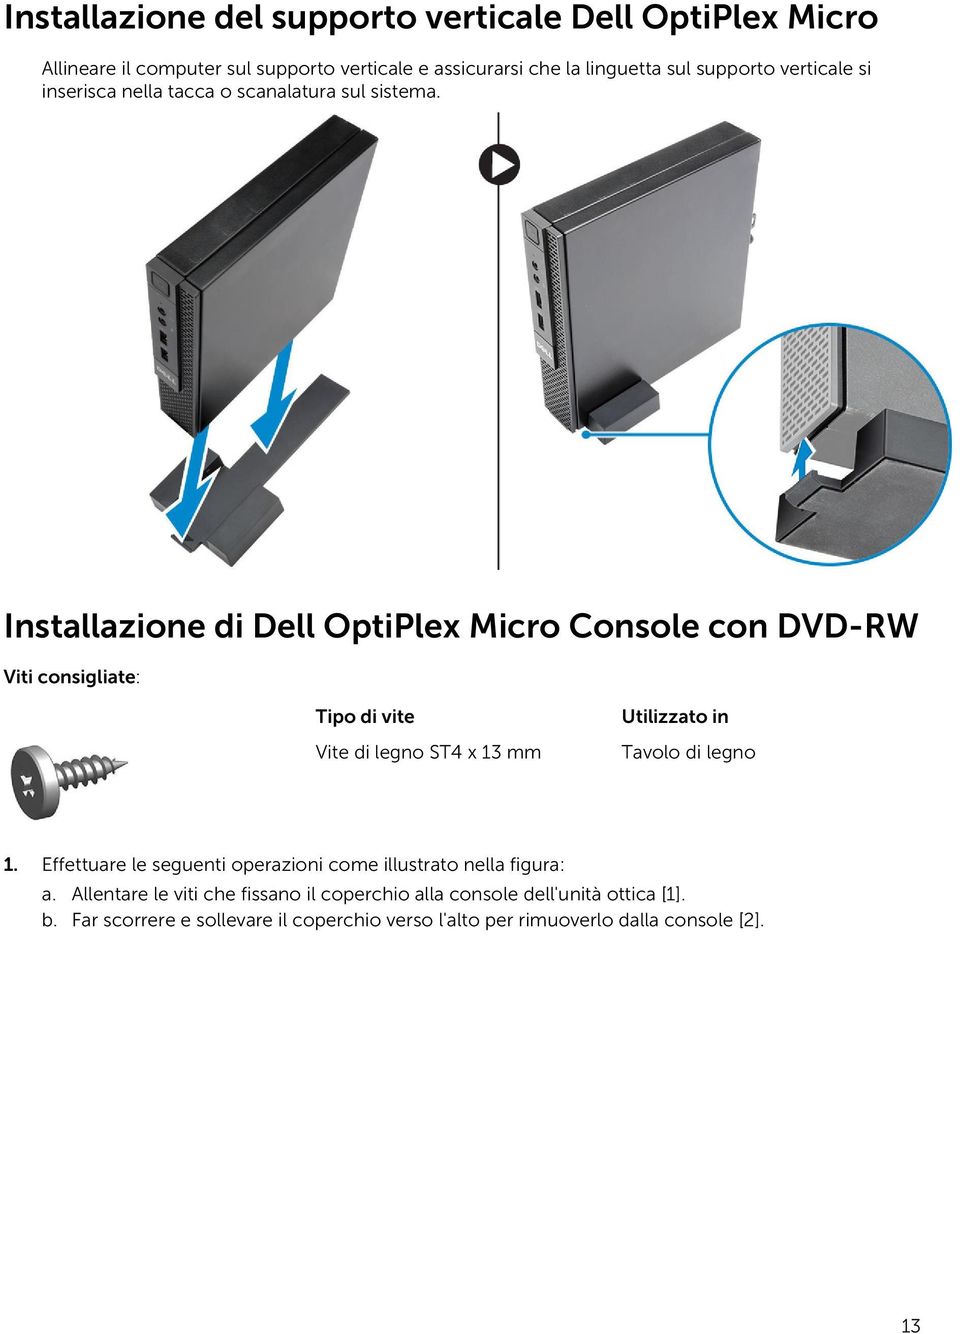 Installazione di Dell OptiPlex Micro Console con DVD-RW Viti consigliate: Tipo di vite Vite di legno ST4 x 13 mm Utilizzato in Tavolo di legno 1.